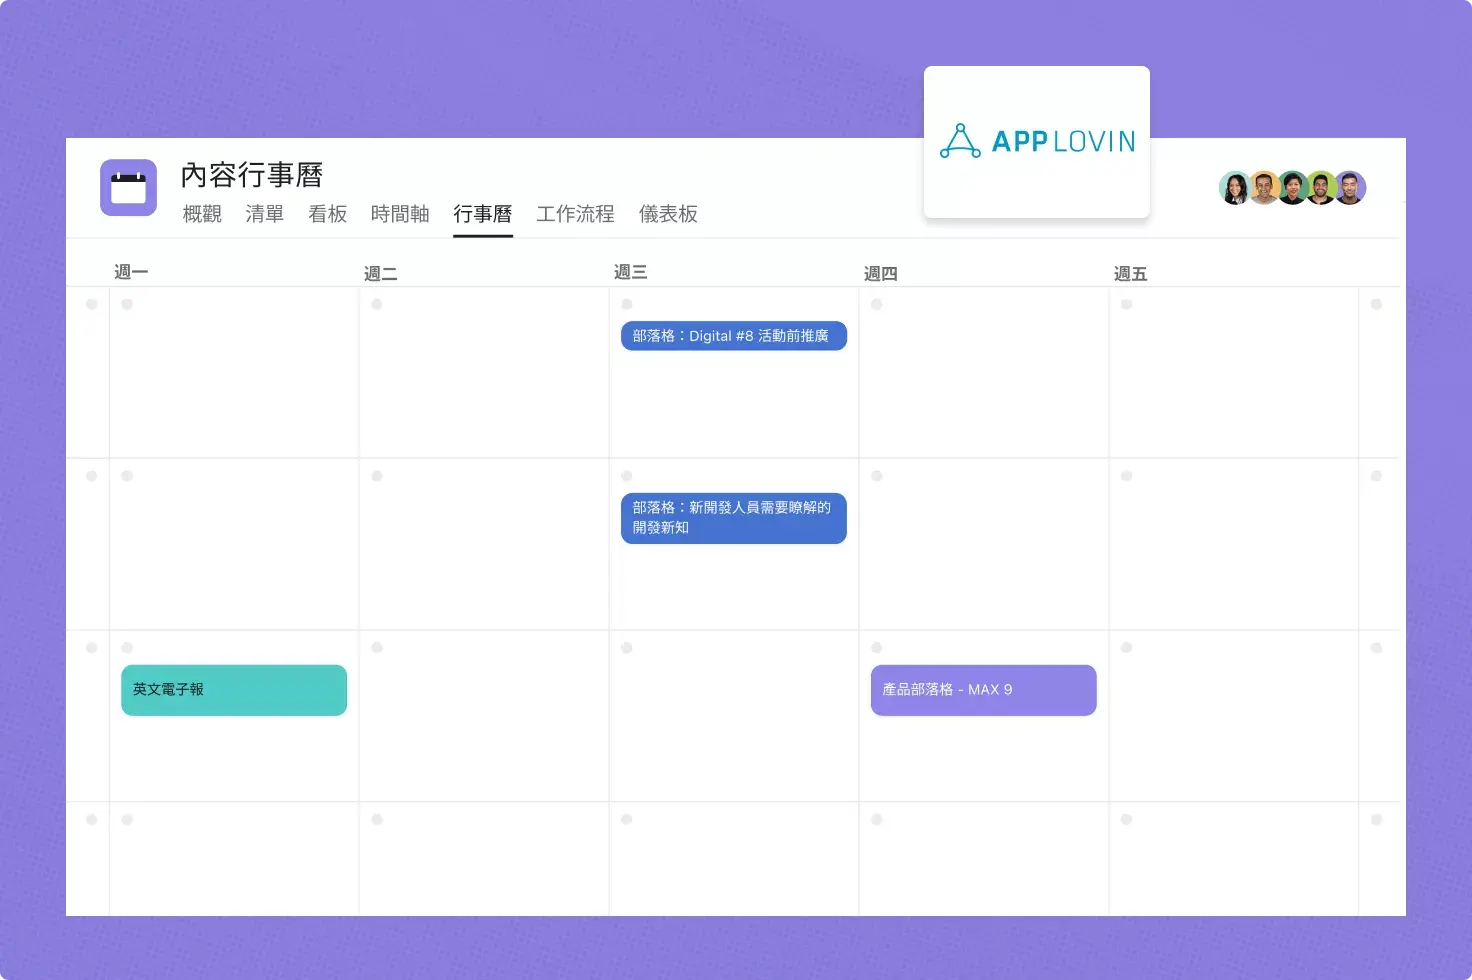 AppLovin 將 Asana 應用於內容行事曆工作流程